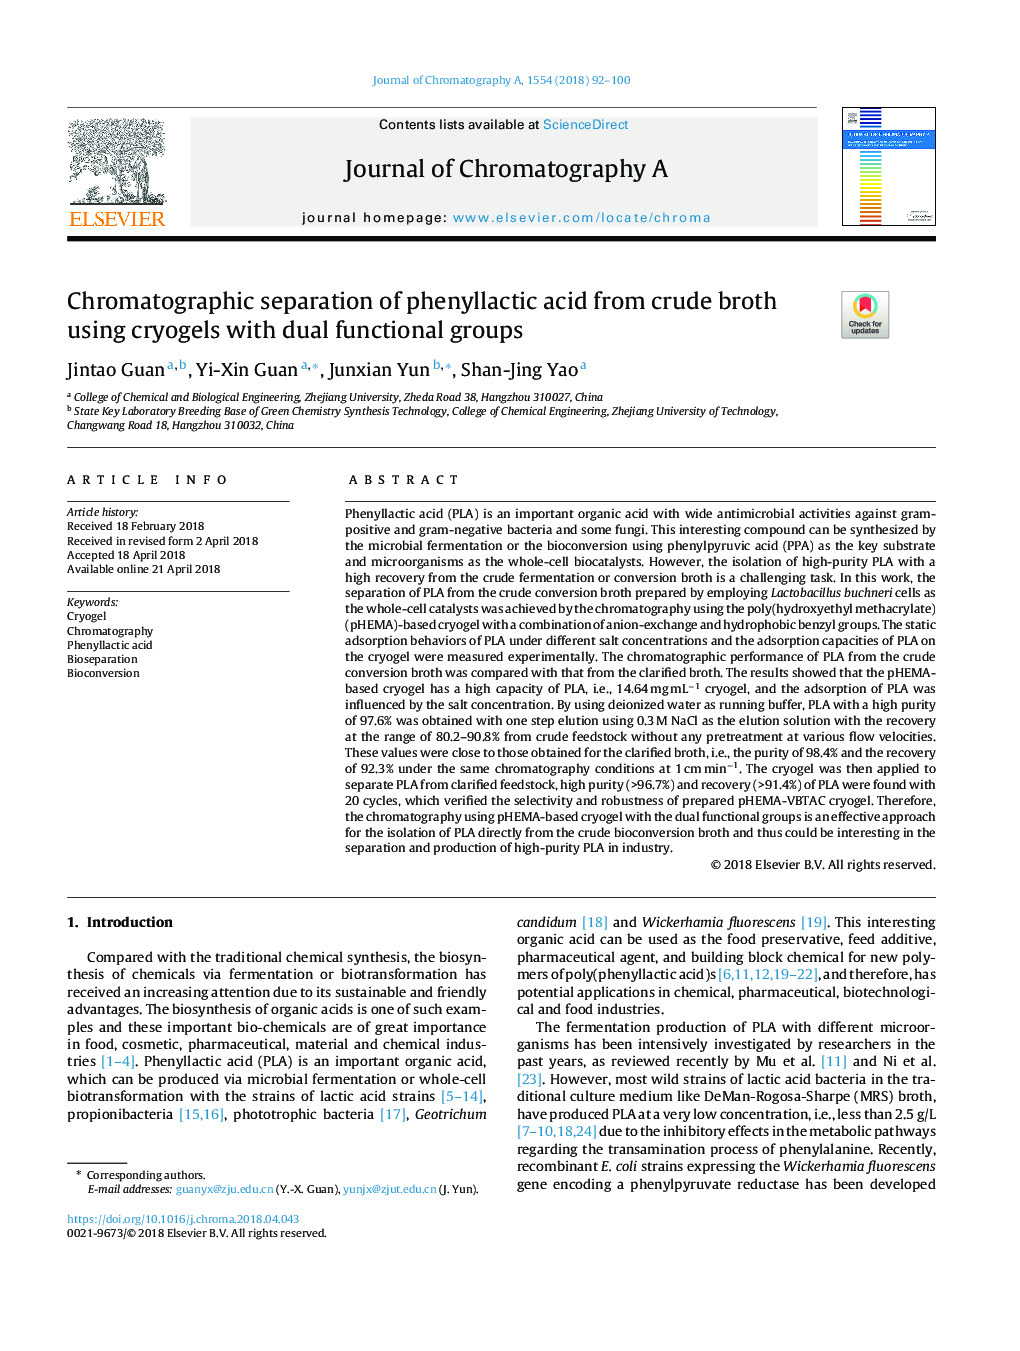 جداسازی کروماتوگرافی اسید فینلیلاکتیک از بره خام با استفاده از کریگول ها با گروه های عملکردی دوگانه 